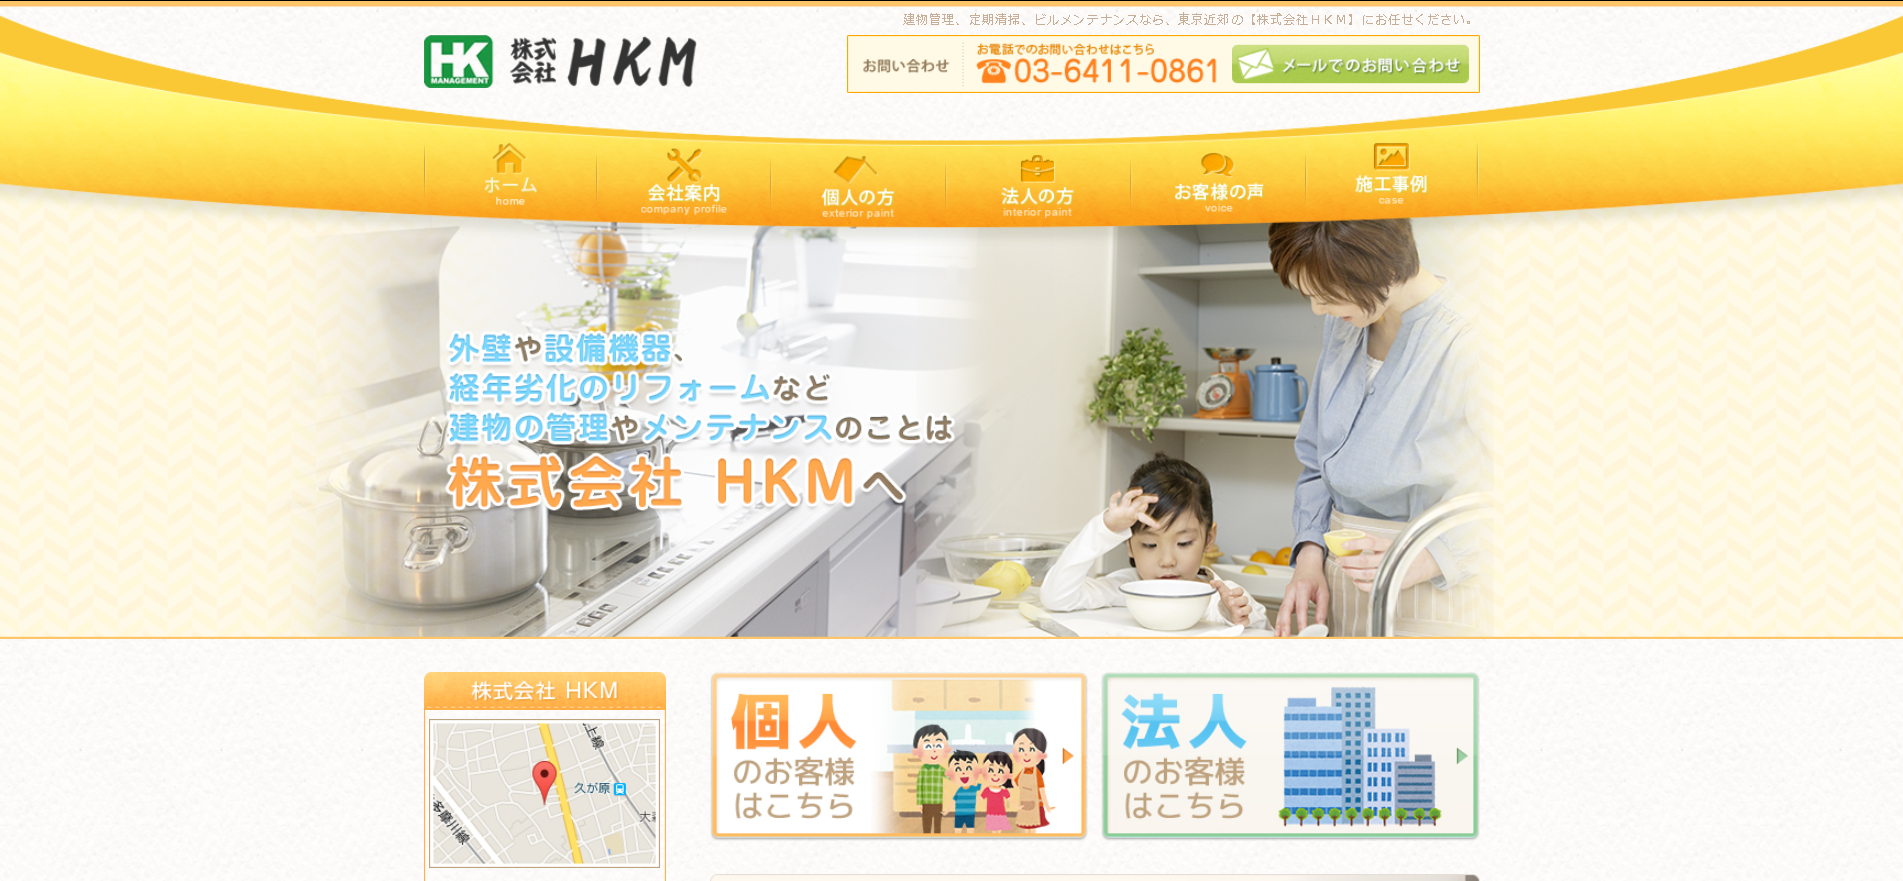 株式会社HKMのHKMサービス